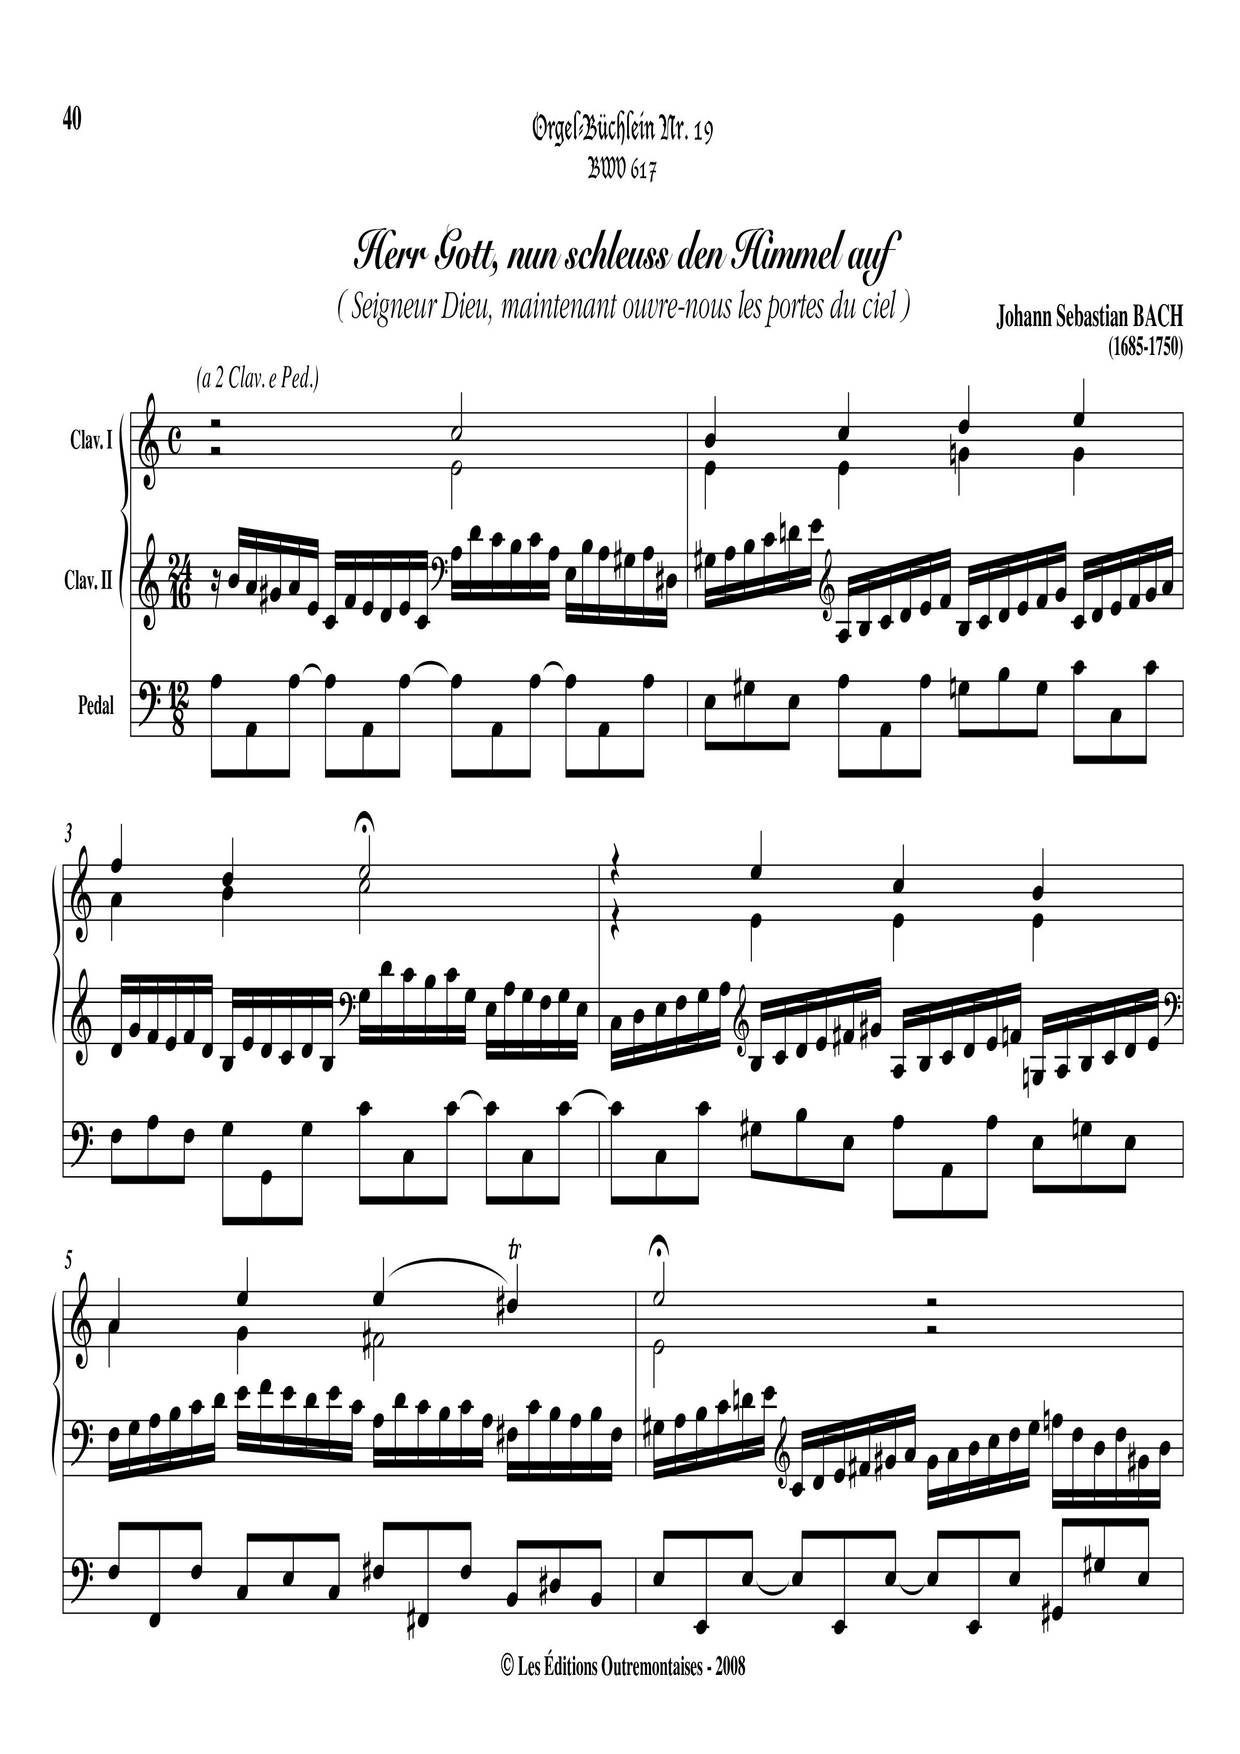 Chorale Prelude 'Herr Gott Nun Schleuss Den Himmel Auf', BWV 617 Score